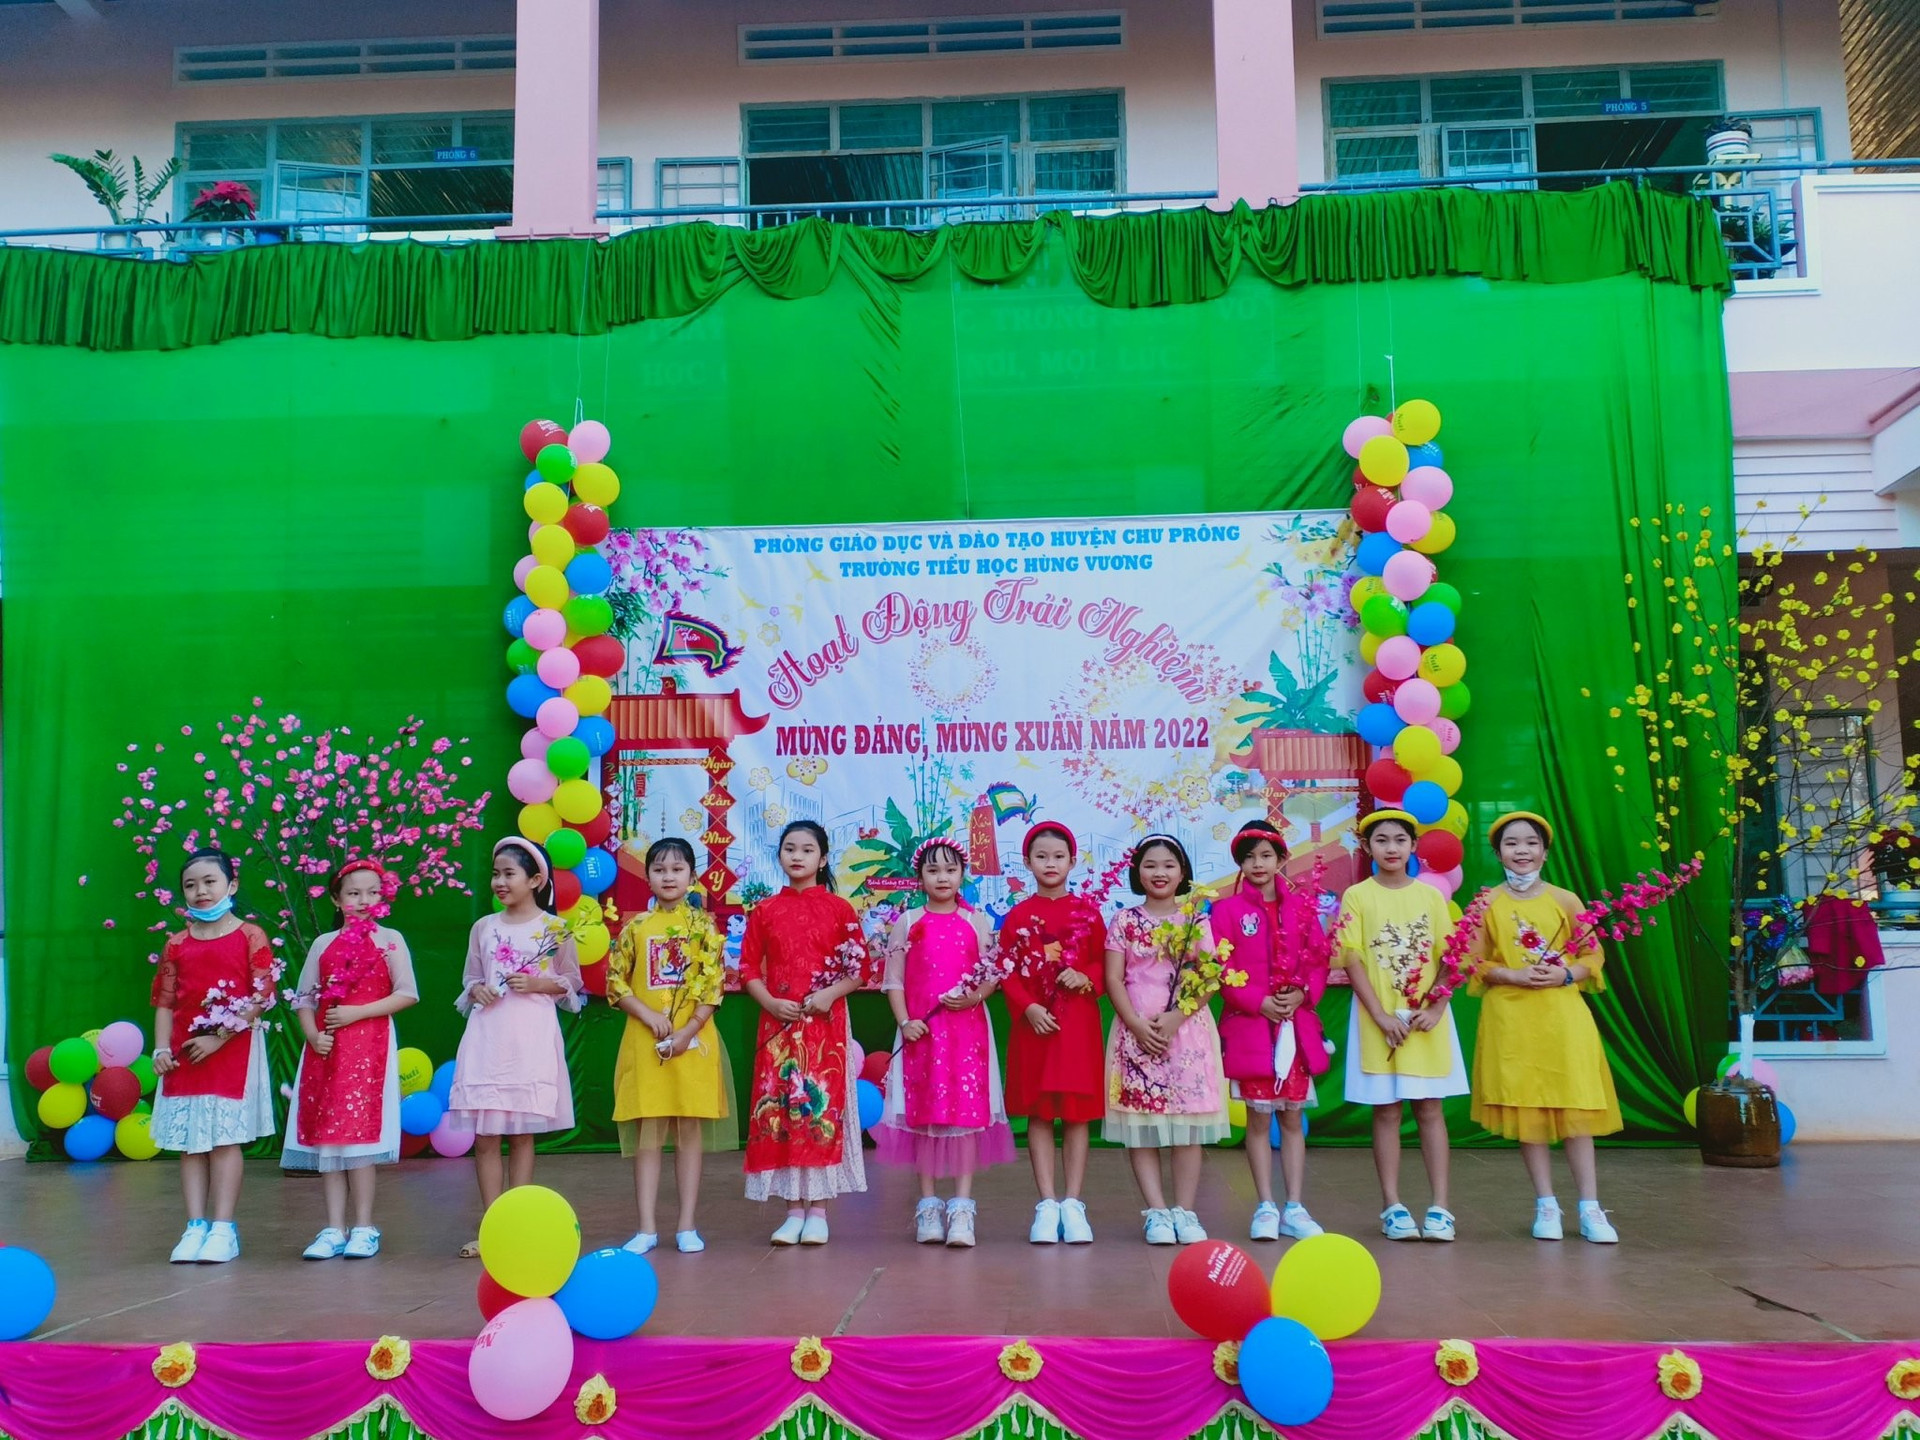 Trải nghiệm - Hoạt động mới của Chương trình Giáo dục phổ thông năm 2018 được thực hiện tại trường Tiểu học Hùng Vương, huyện Chư Prông, tỉnh Gia Lai.